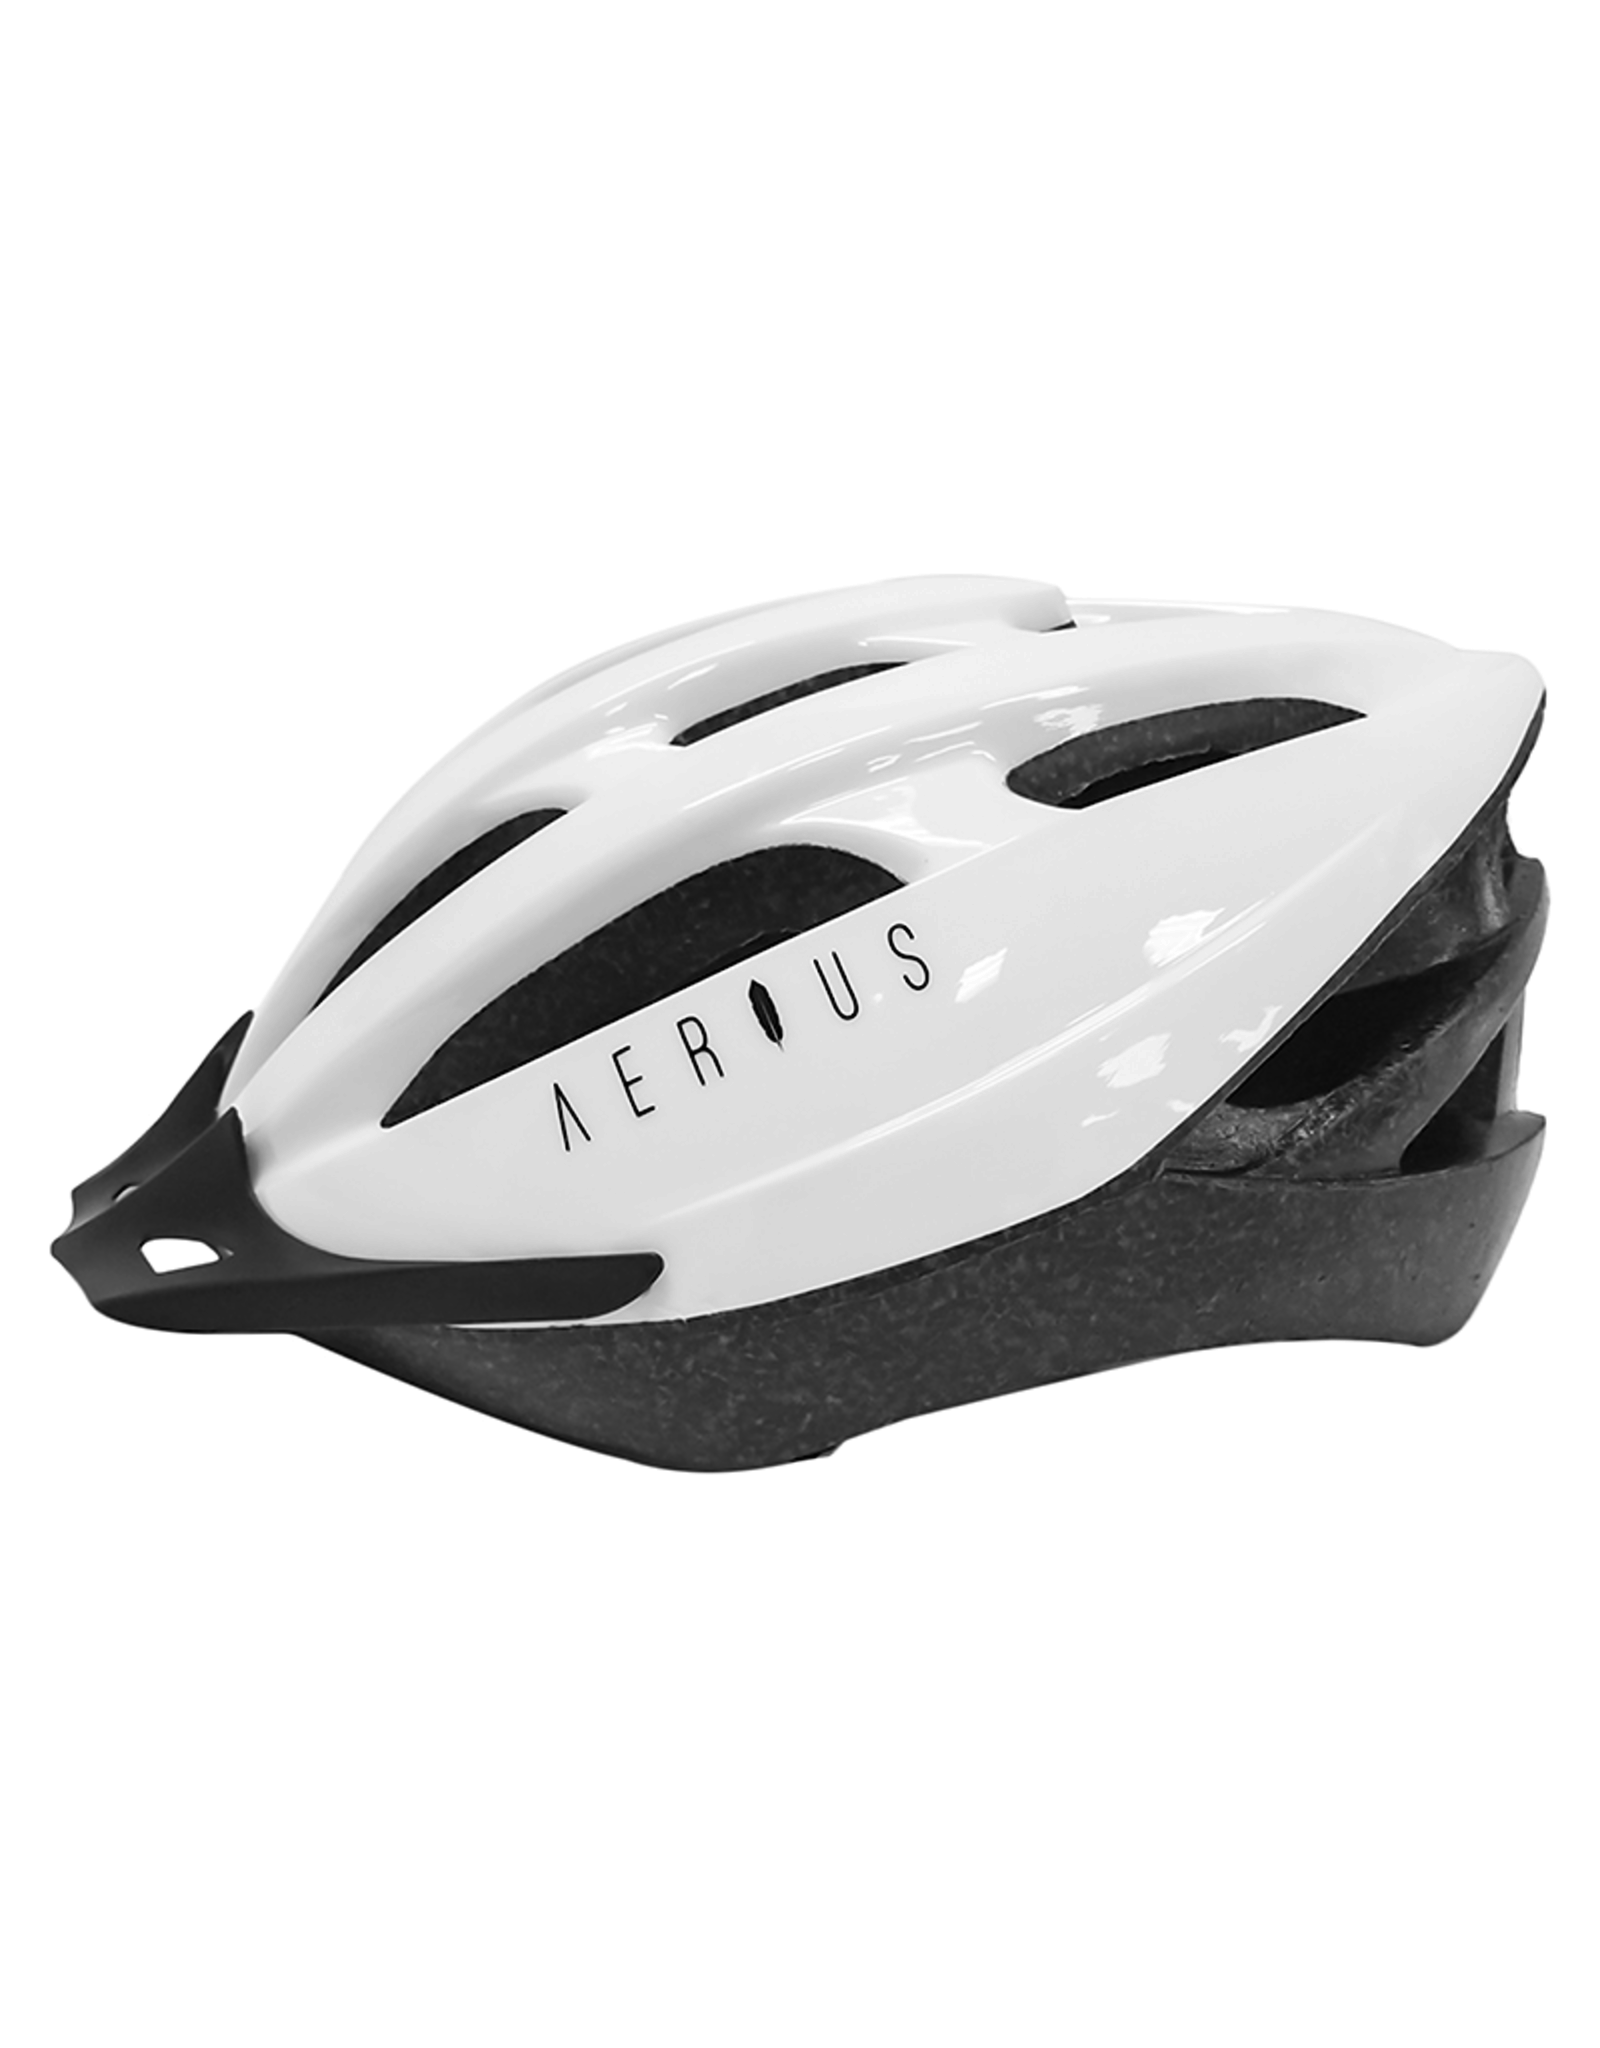 Aerius Aerius V-19 Sport Helmet -